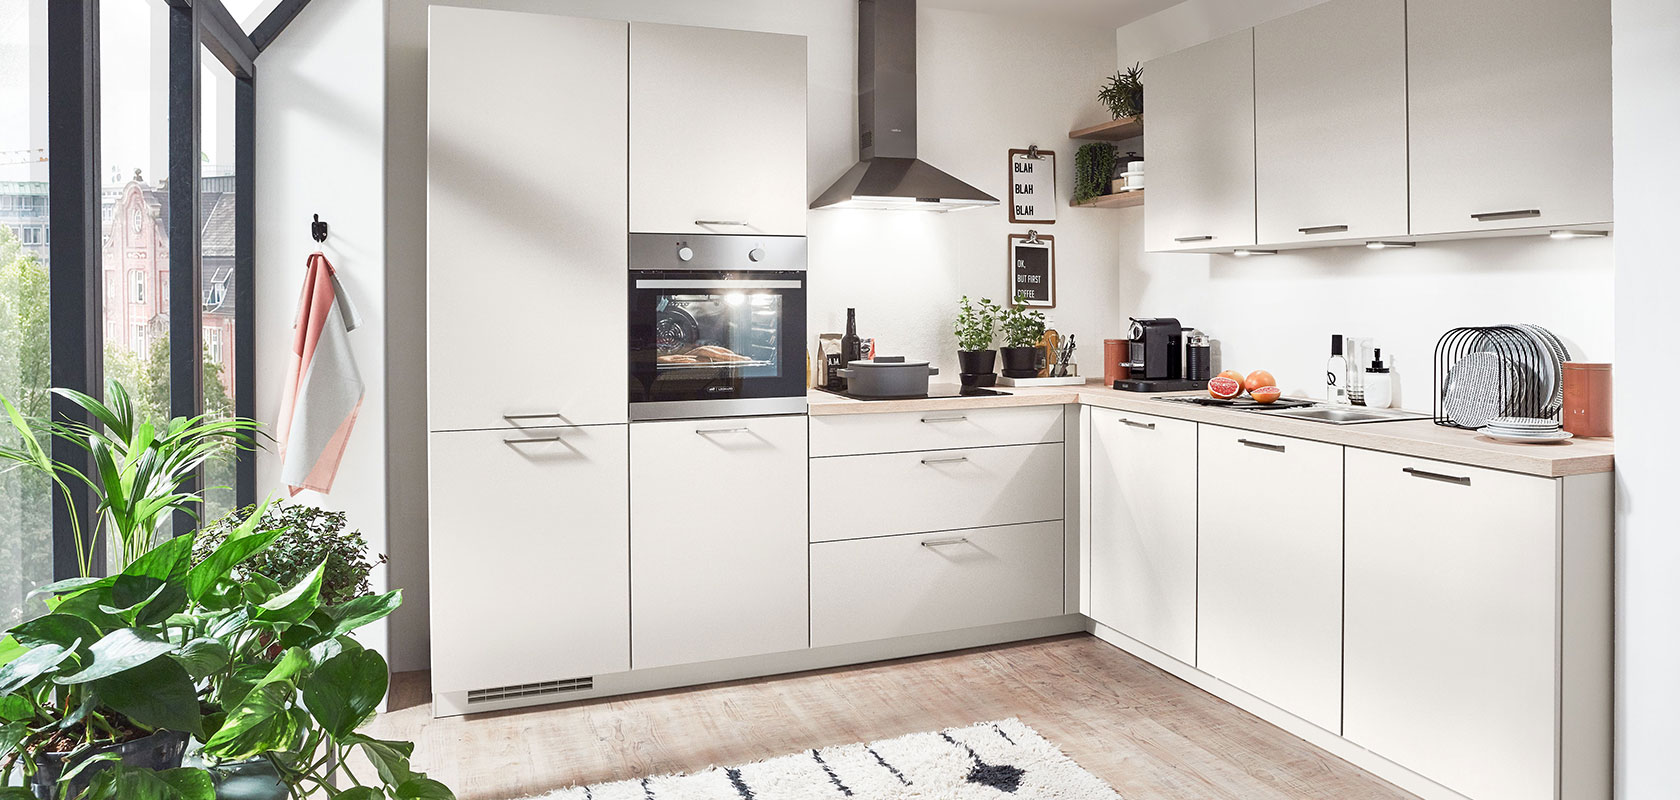 Interni di cucina moderna con armadi bianchi, elettrodomestici integrati e un tocco di verde vicino alla finestra, che illustra un design urbano pulito e contemporaneo.